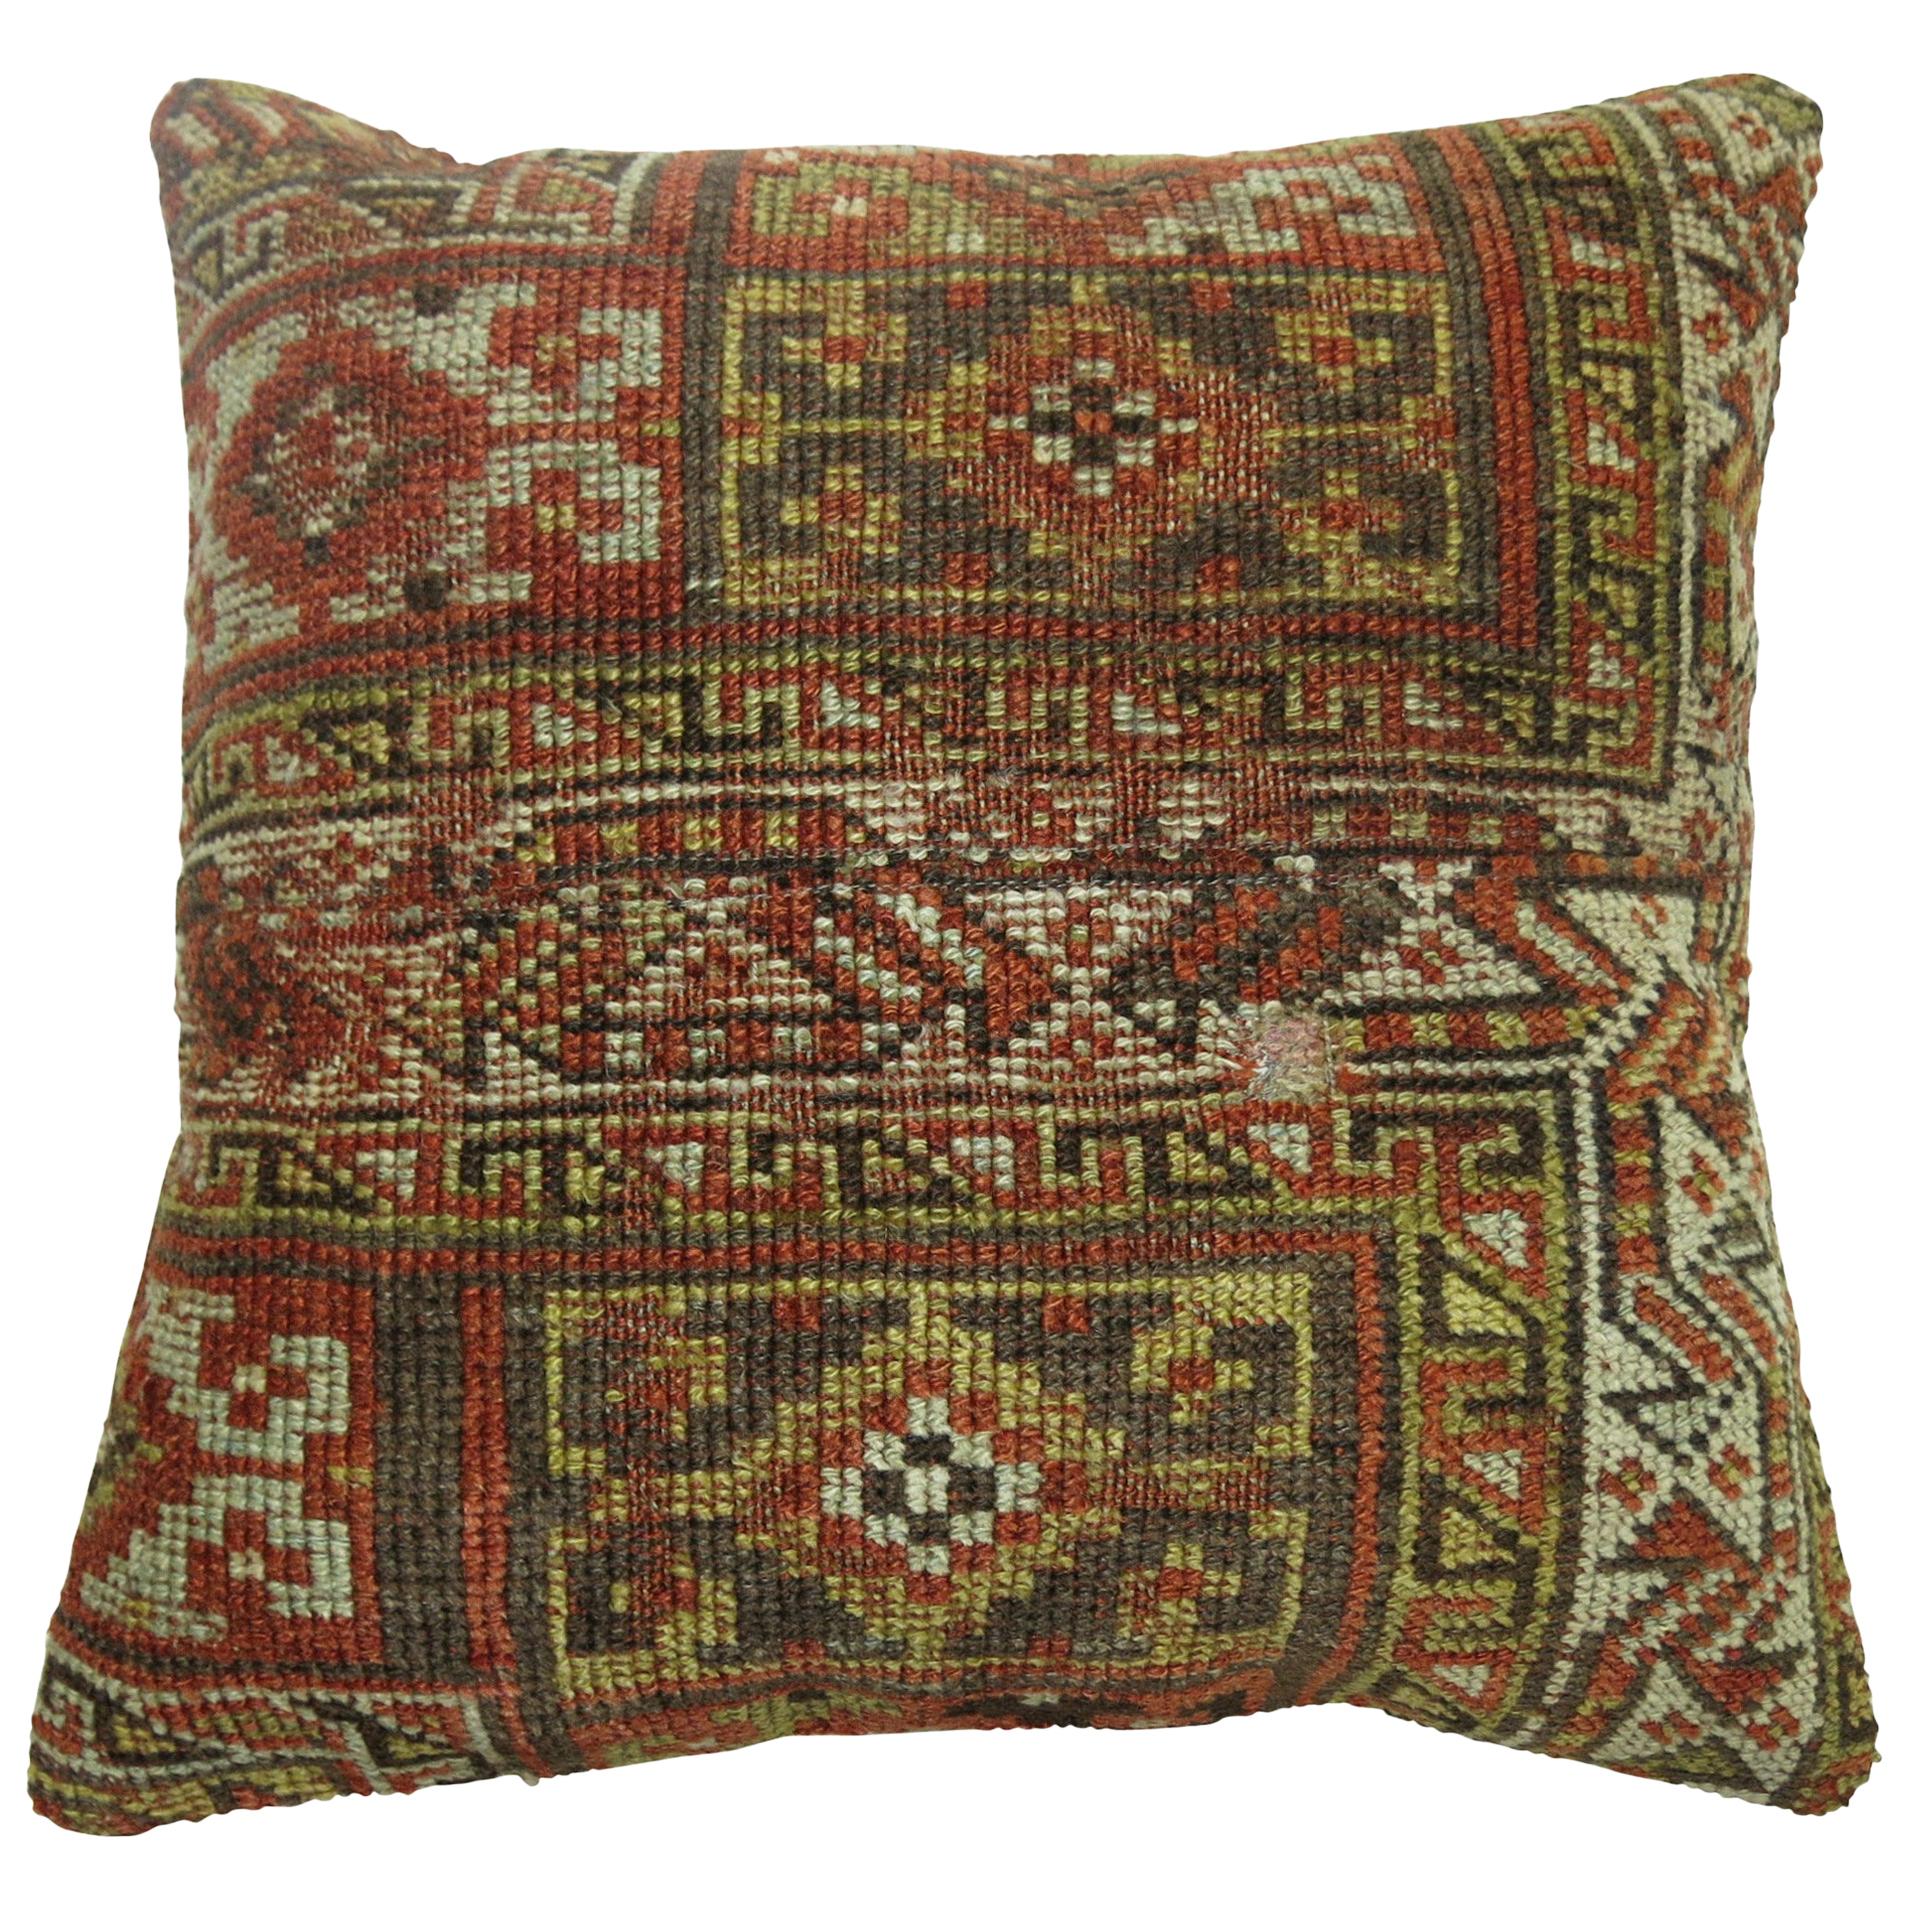 Rustic Persian Rug Pillow